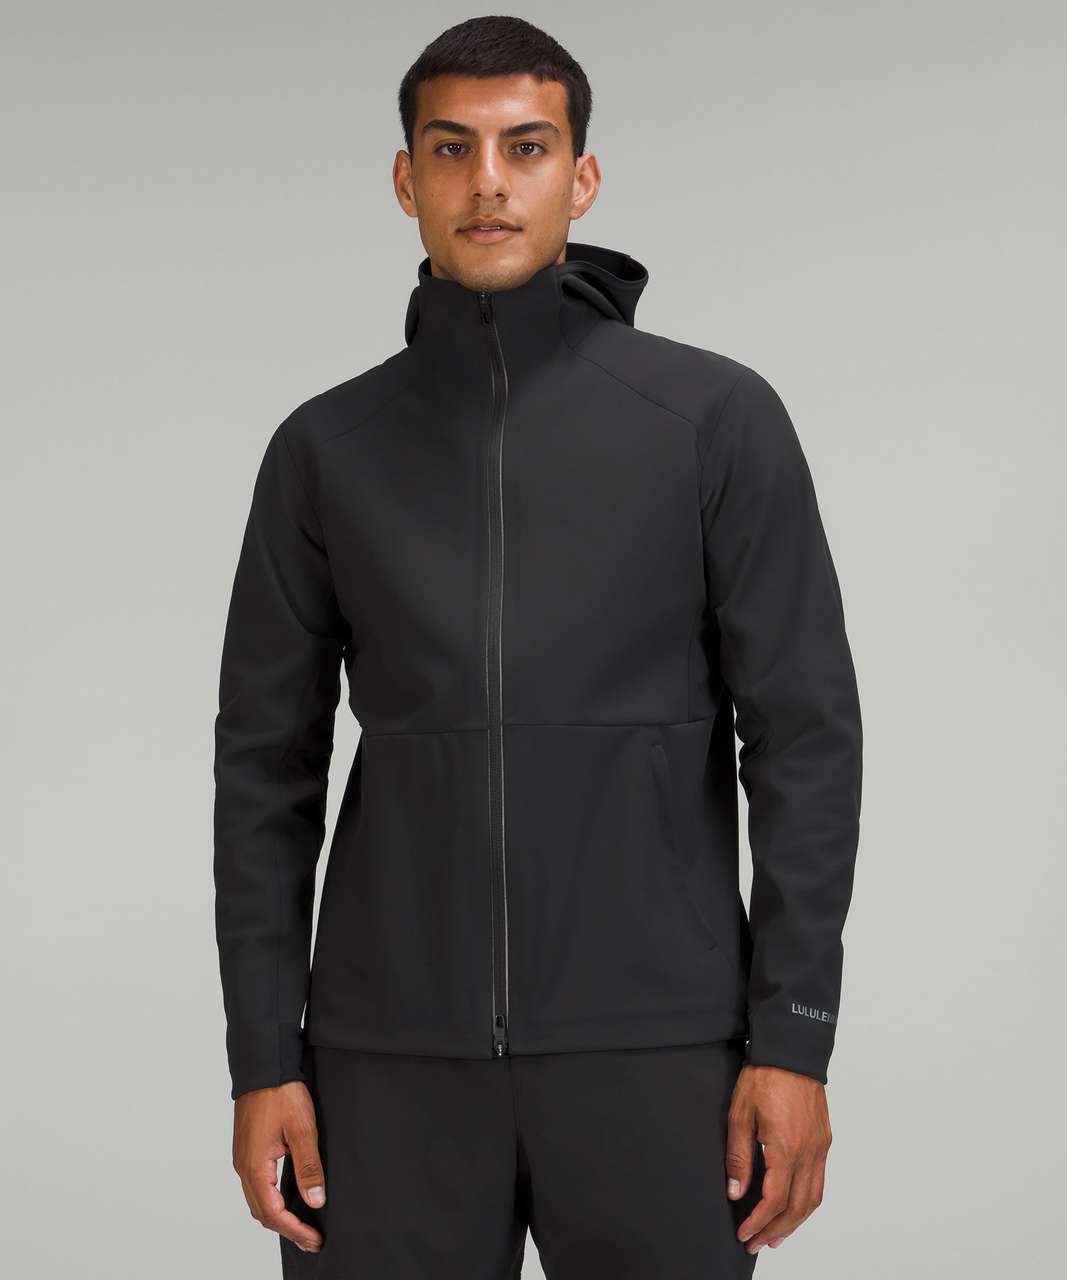 Black Cross Chill hooded running jacket, lululemon